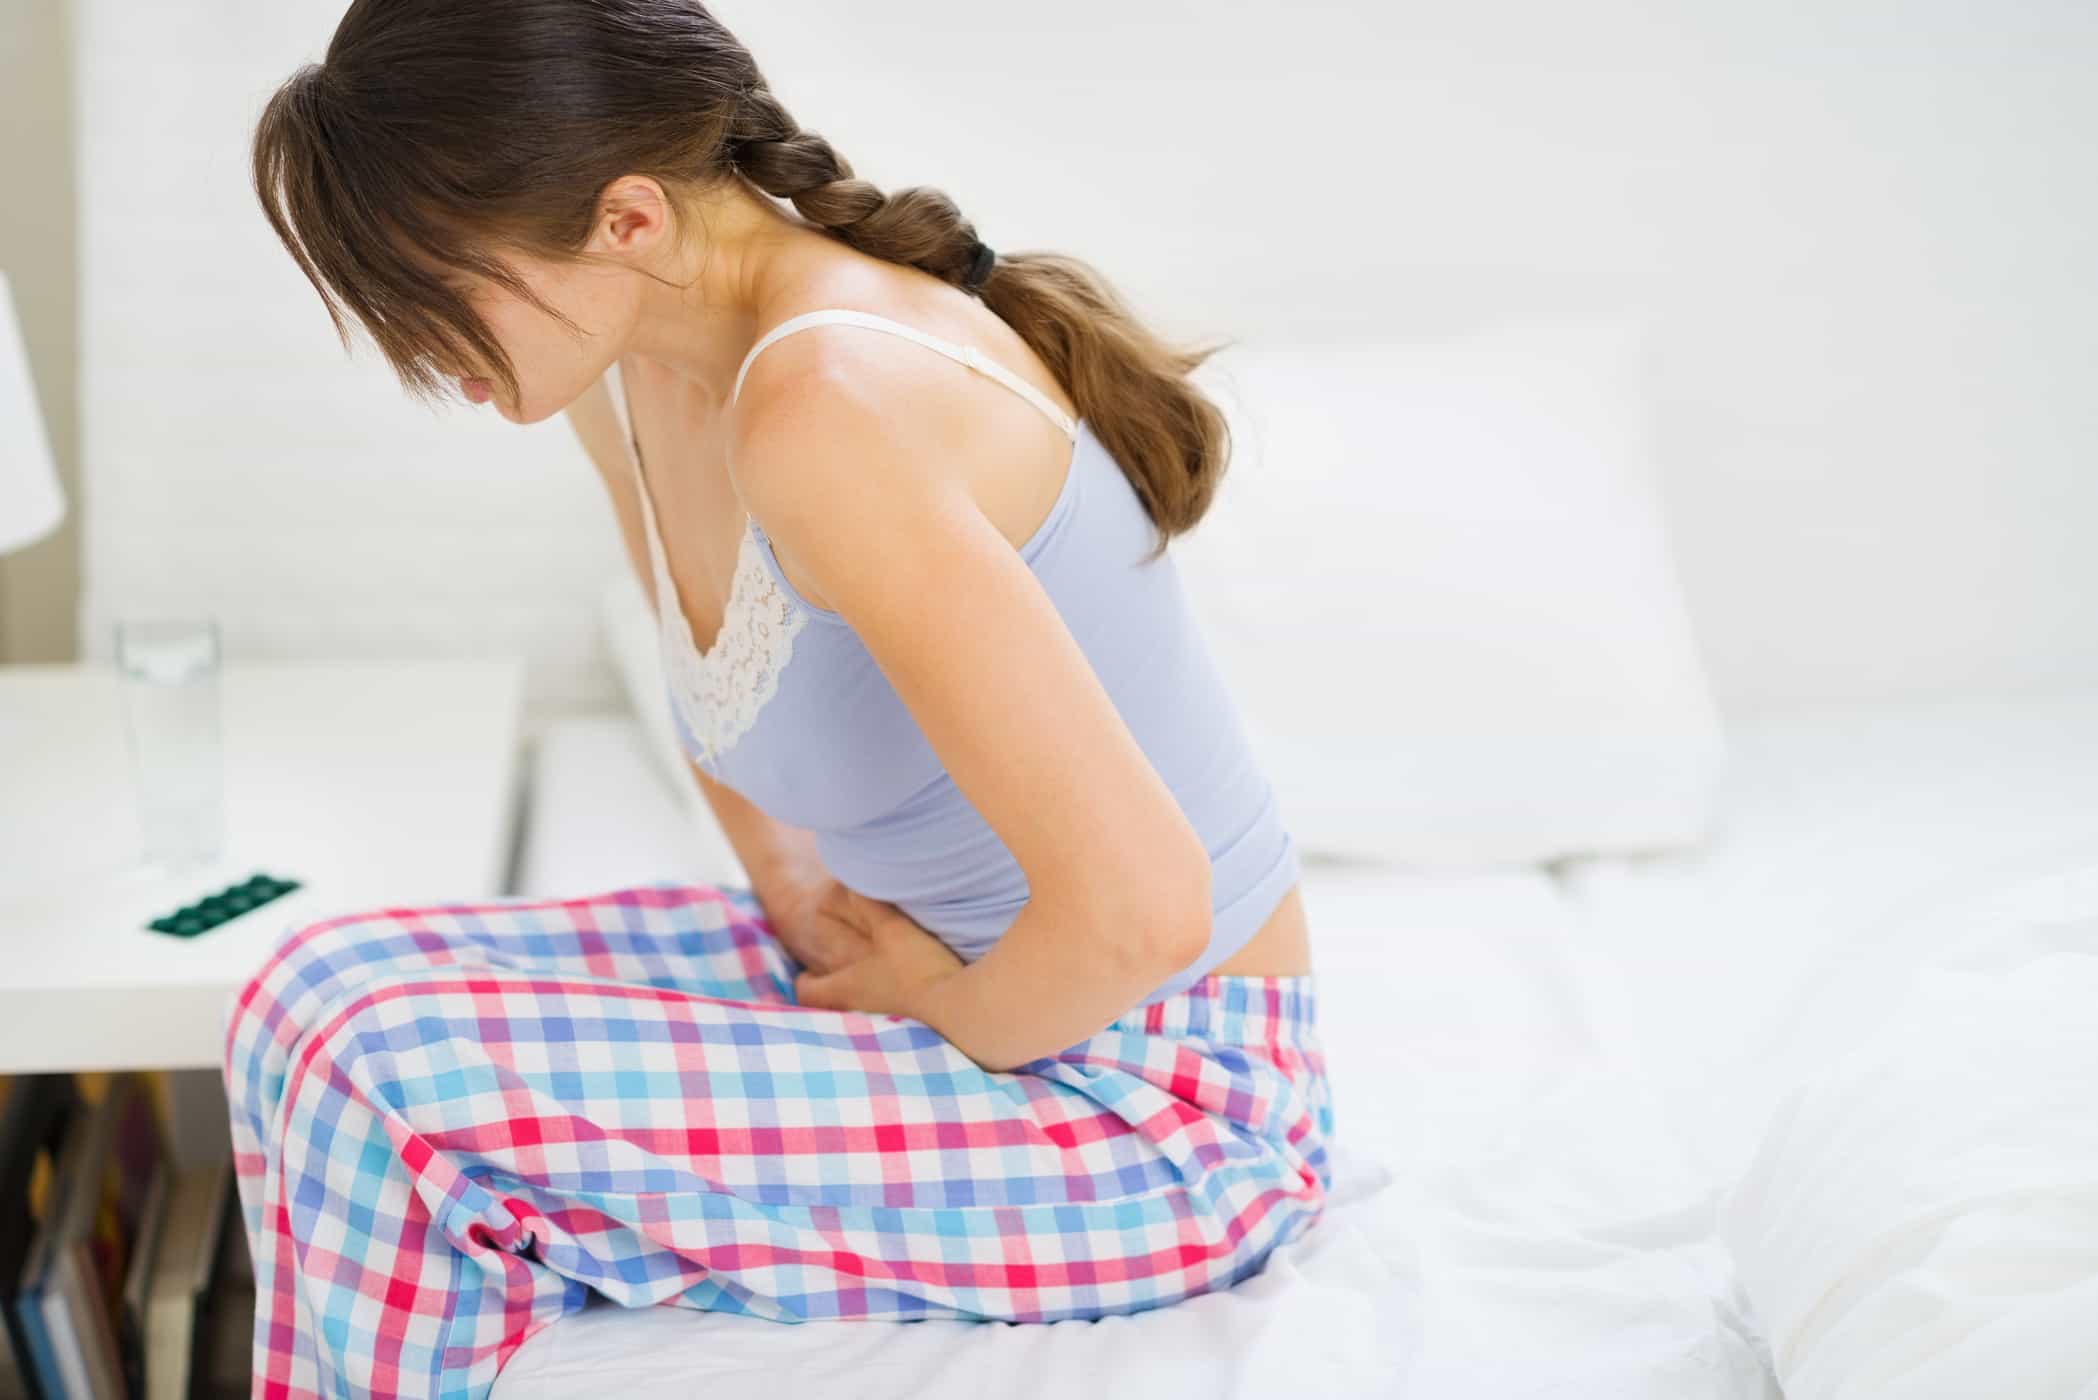 6 problèmes menstruels qui devraient être vérifiés par un médecin et causes possibles